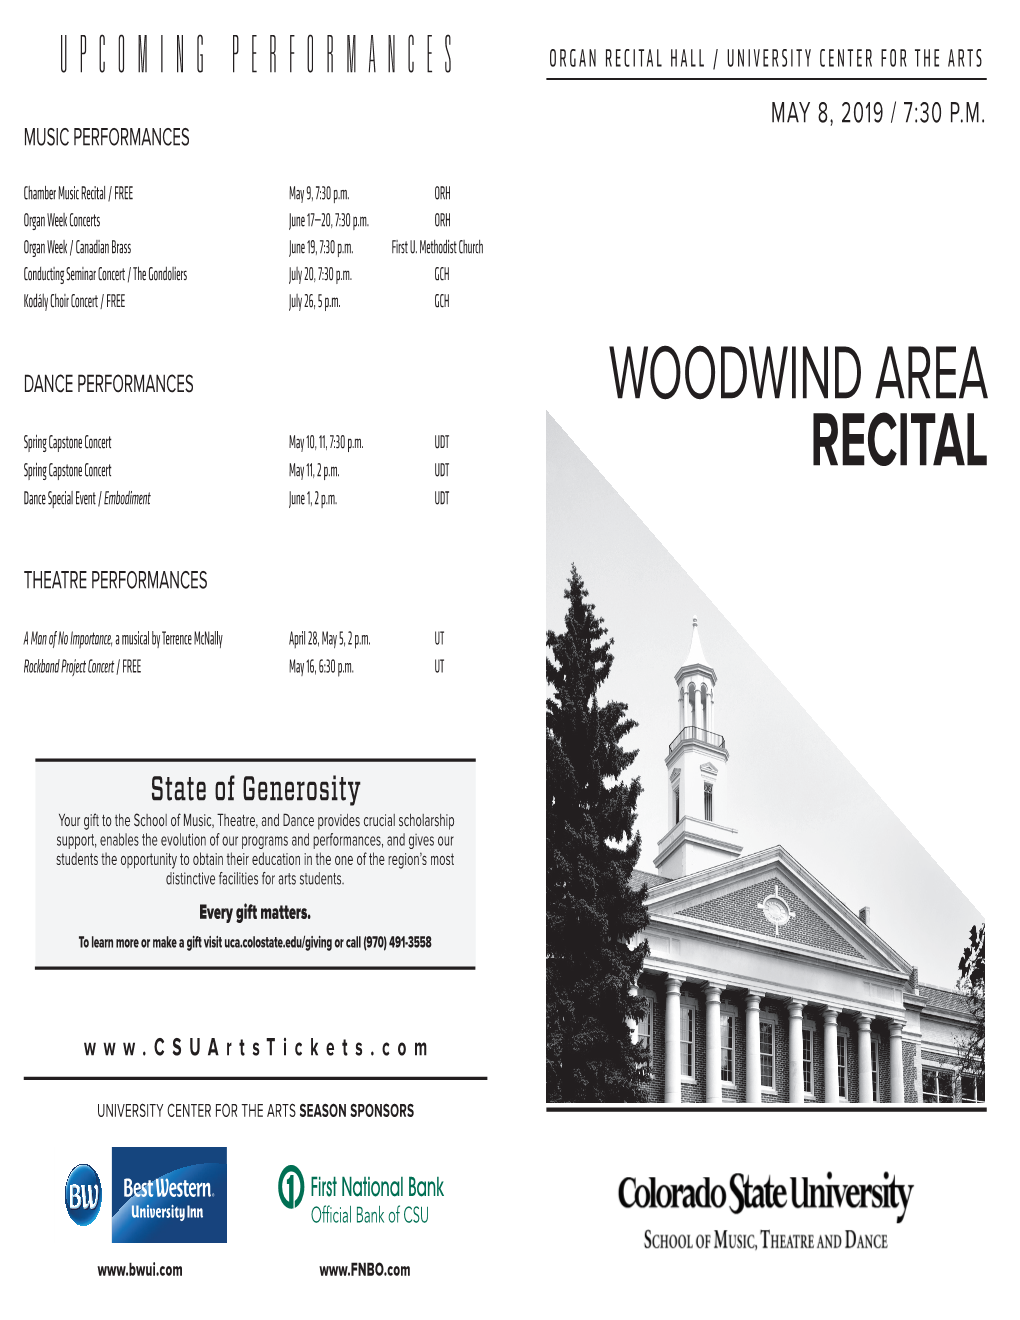 Woodwind Area Recital.Indd